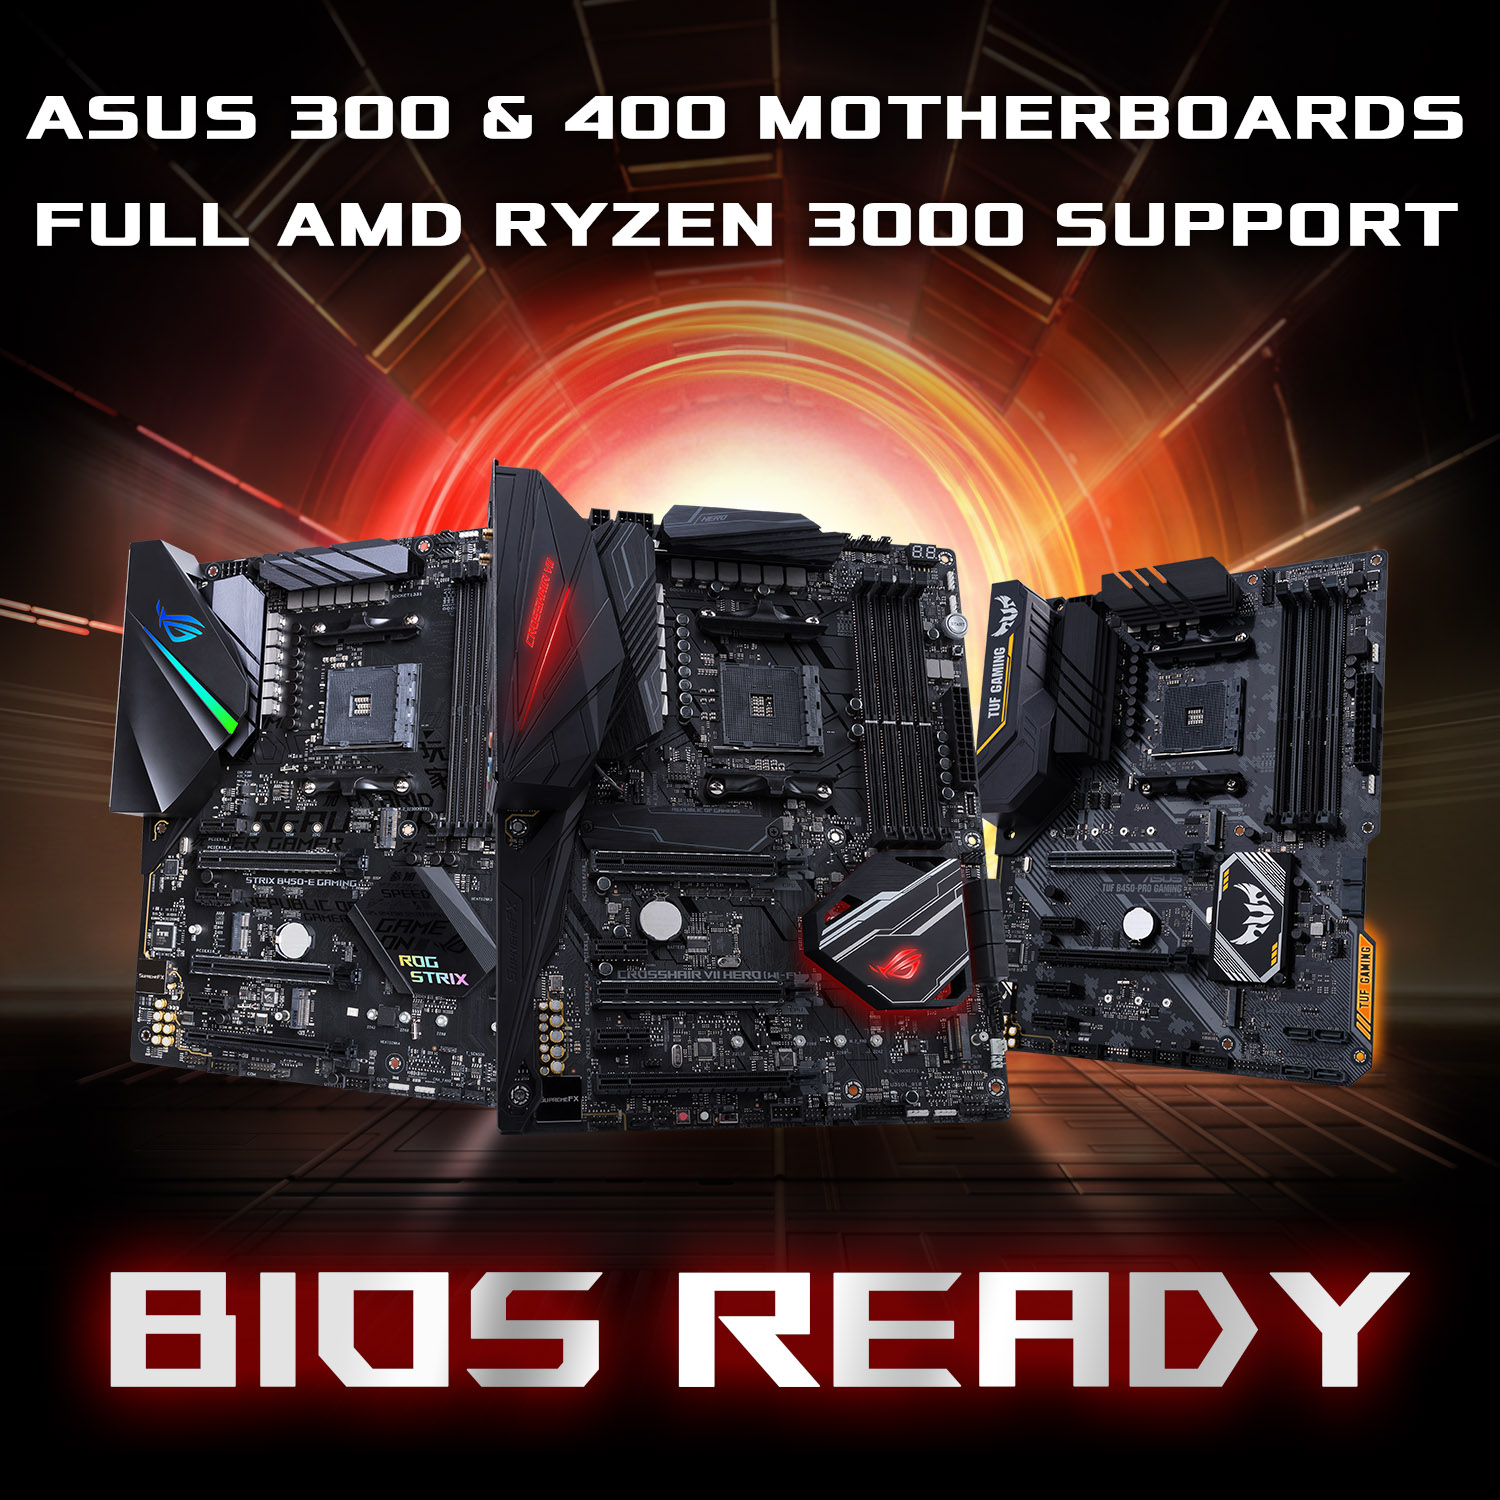 เมนบอร์ด ASUS AM4 ซีรีย์ 300 และ 400 พร้อมรองรับซีพียู AMD Ryzen 3000 เป็นที่เรียบร้อยแล้ว